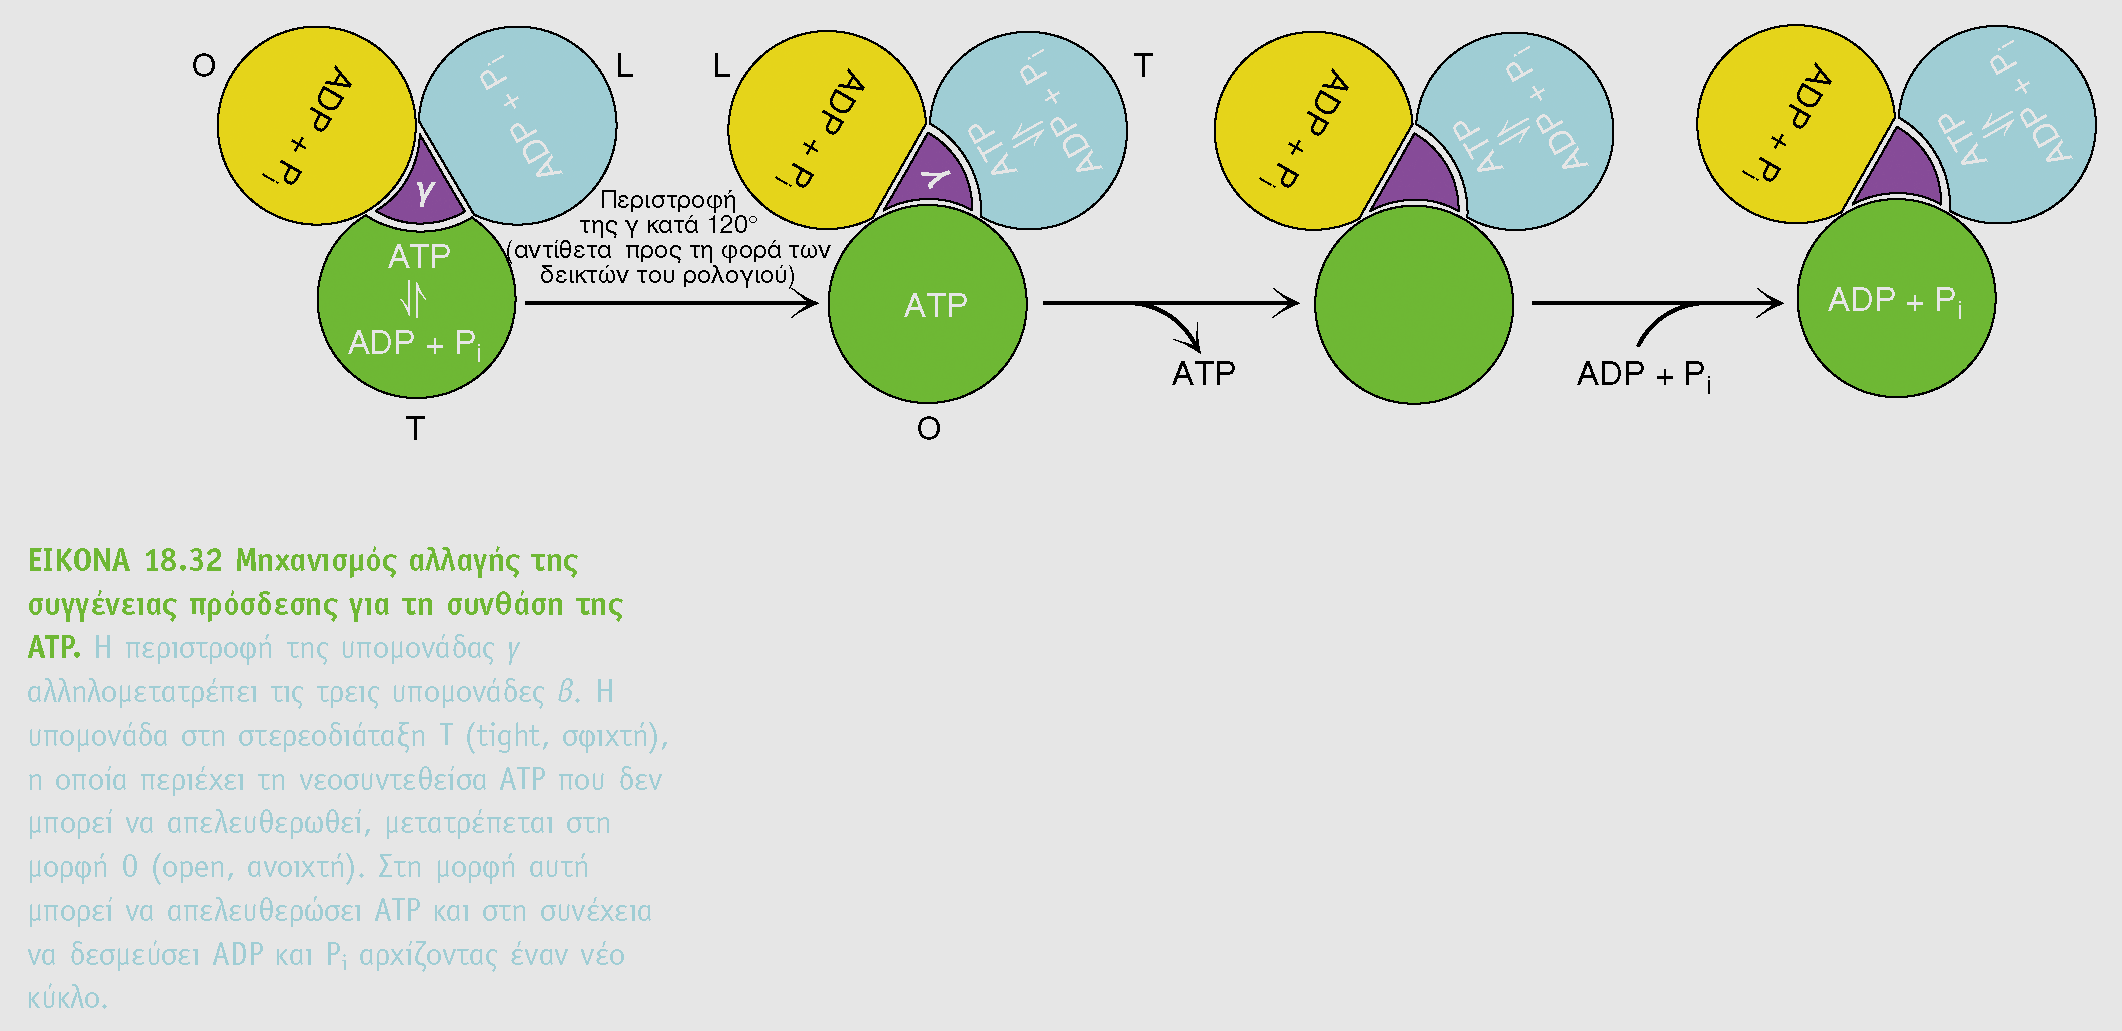 Κίνηση αντίθετη εκείνης των δεικτών του ρολογιού T (tight) τάση πρόσδεσης με ATP Ο